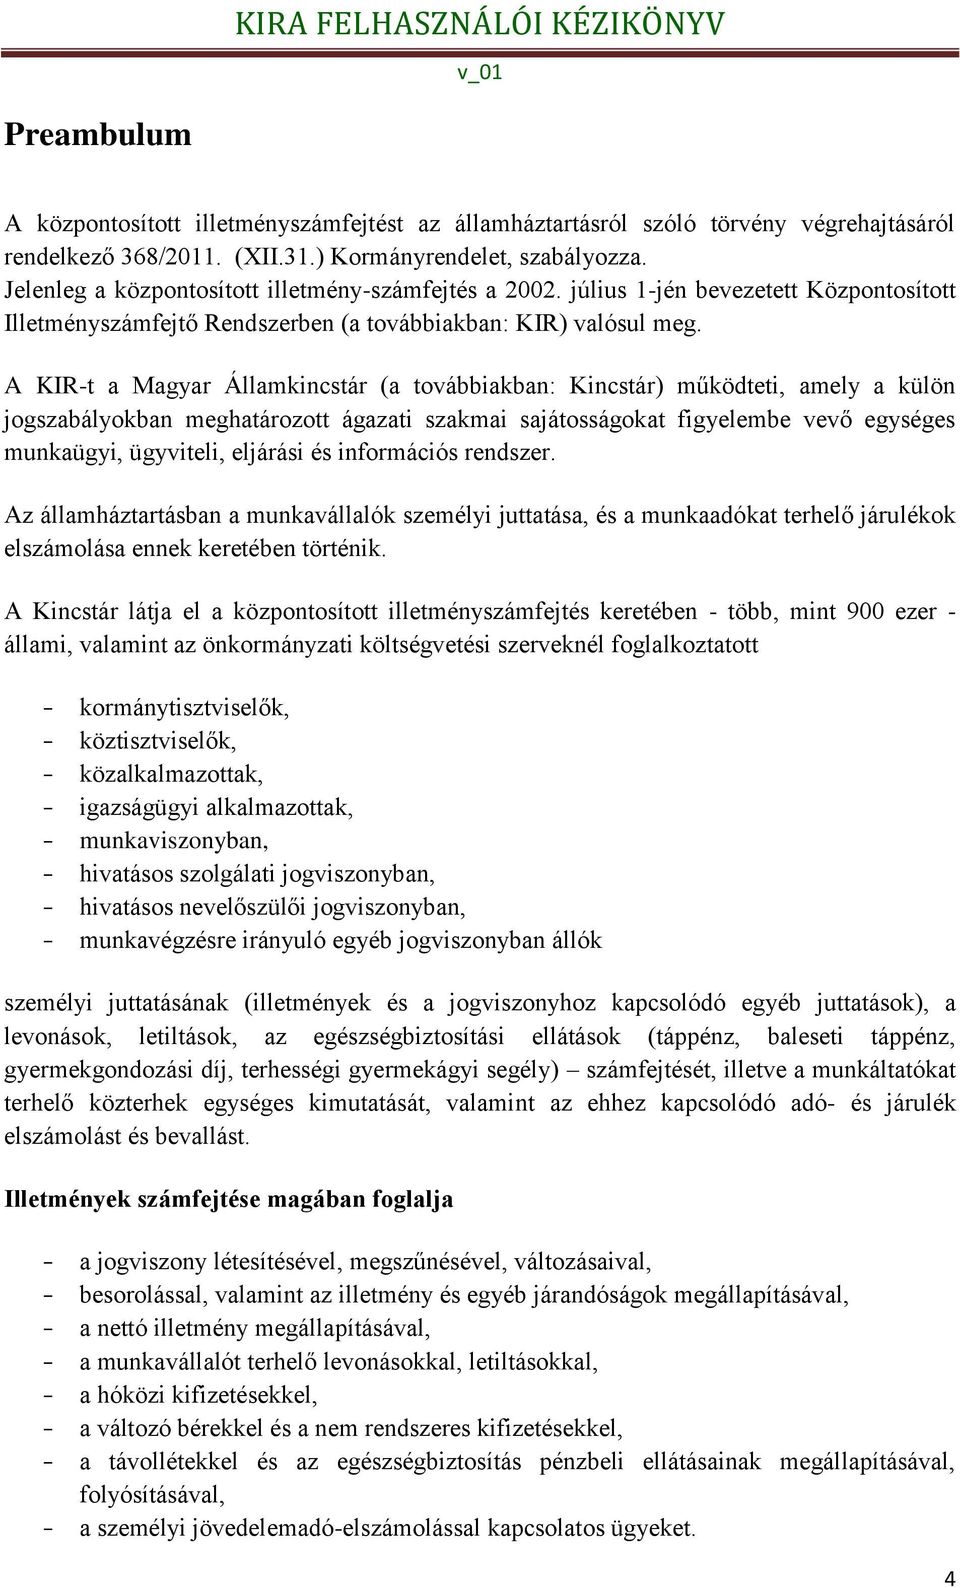 A KIR-t a Magyar Államkincstár (a továbbiakban: Kincstár) működteti, amely a külön jogszabályokban meghatározott ágazati szakmai sajátosságokat figyelembe vevő egységes munkaügyi, ügyviteli, eljárási